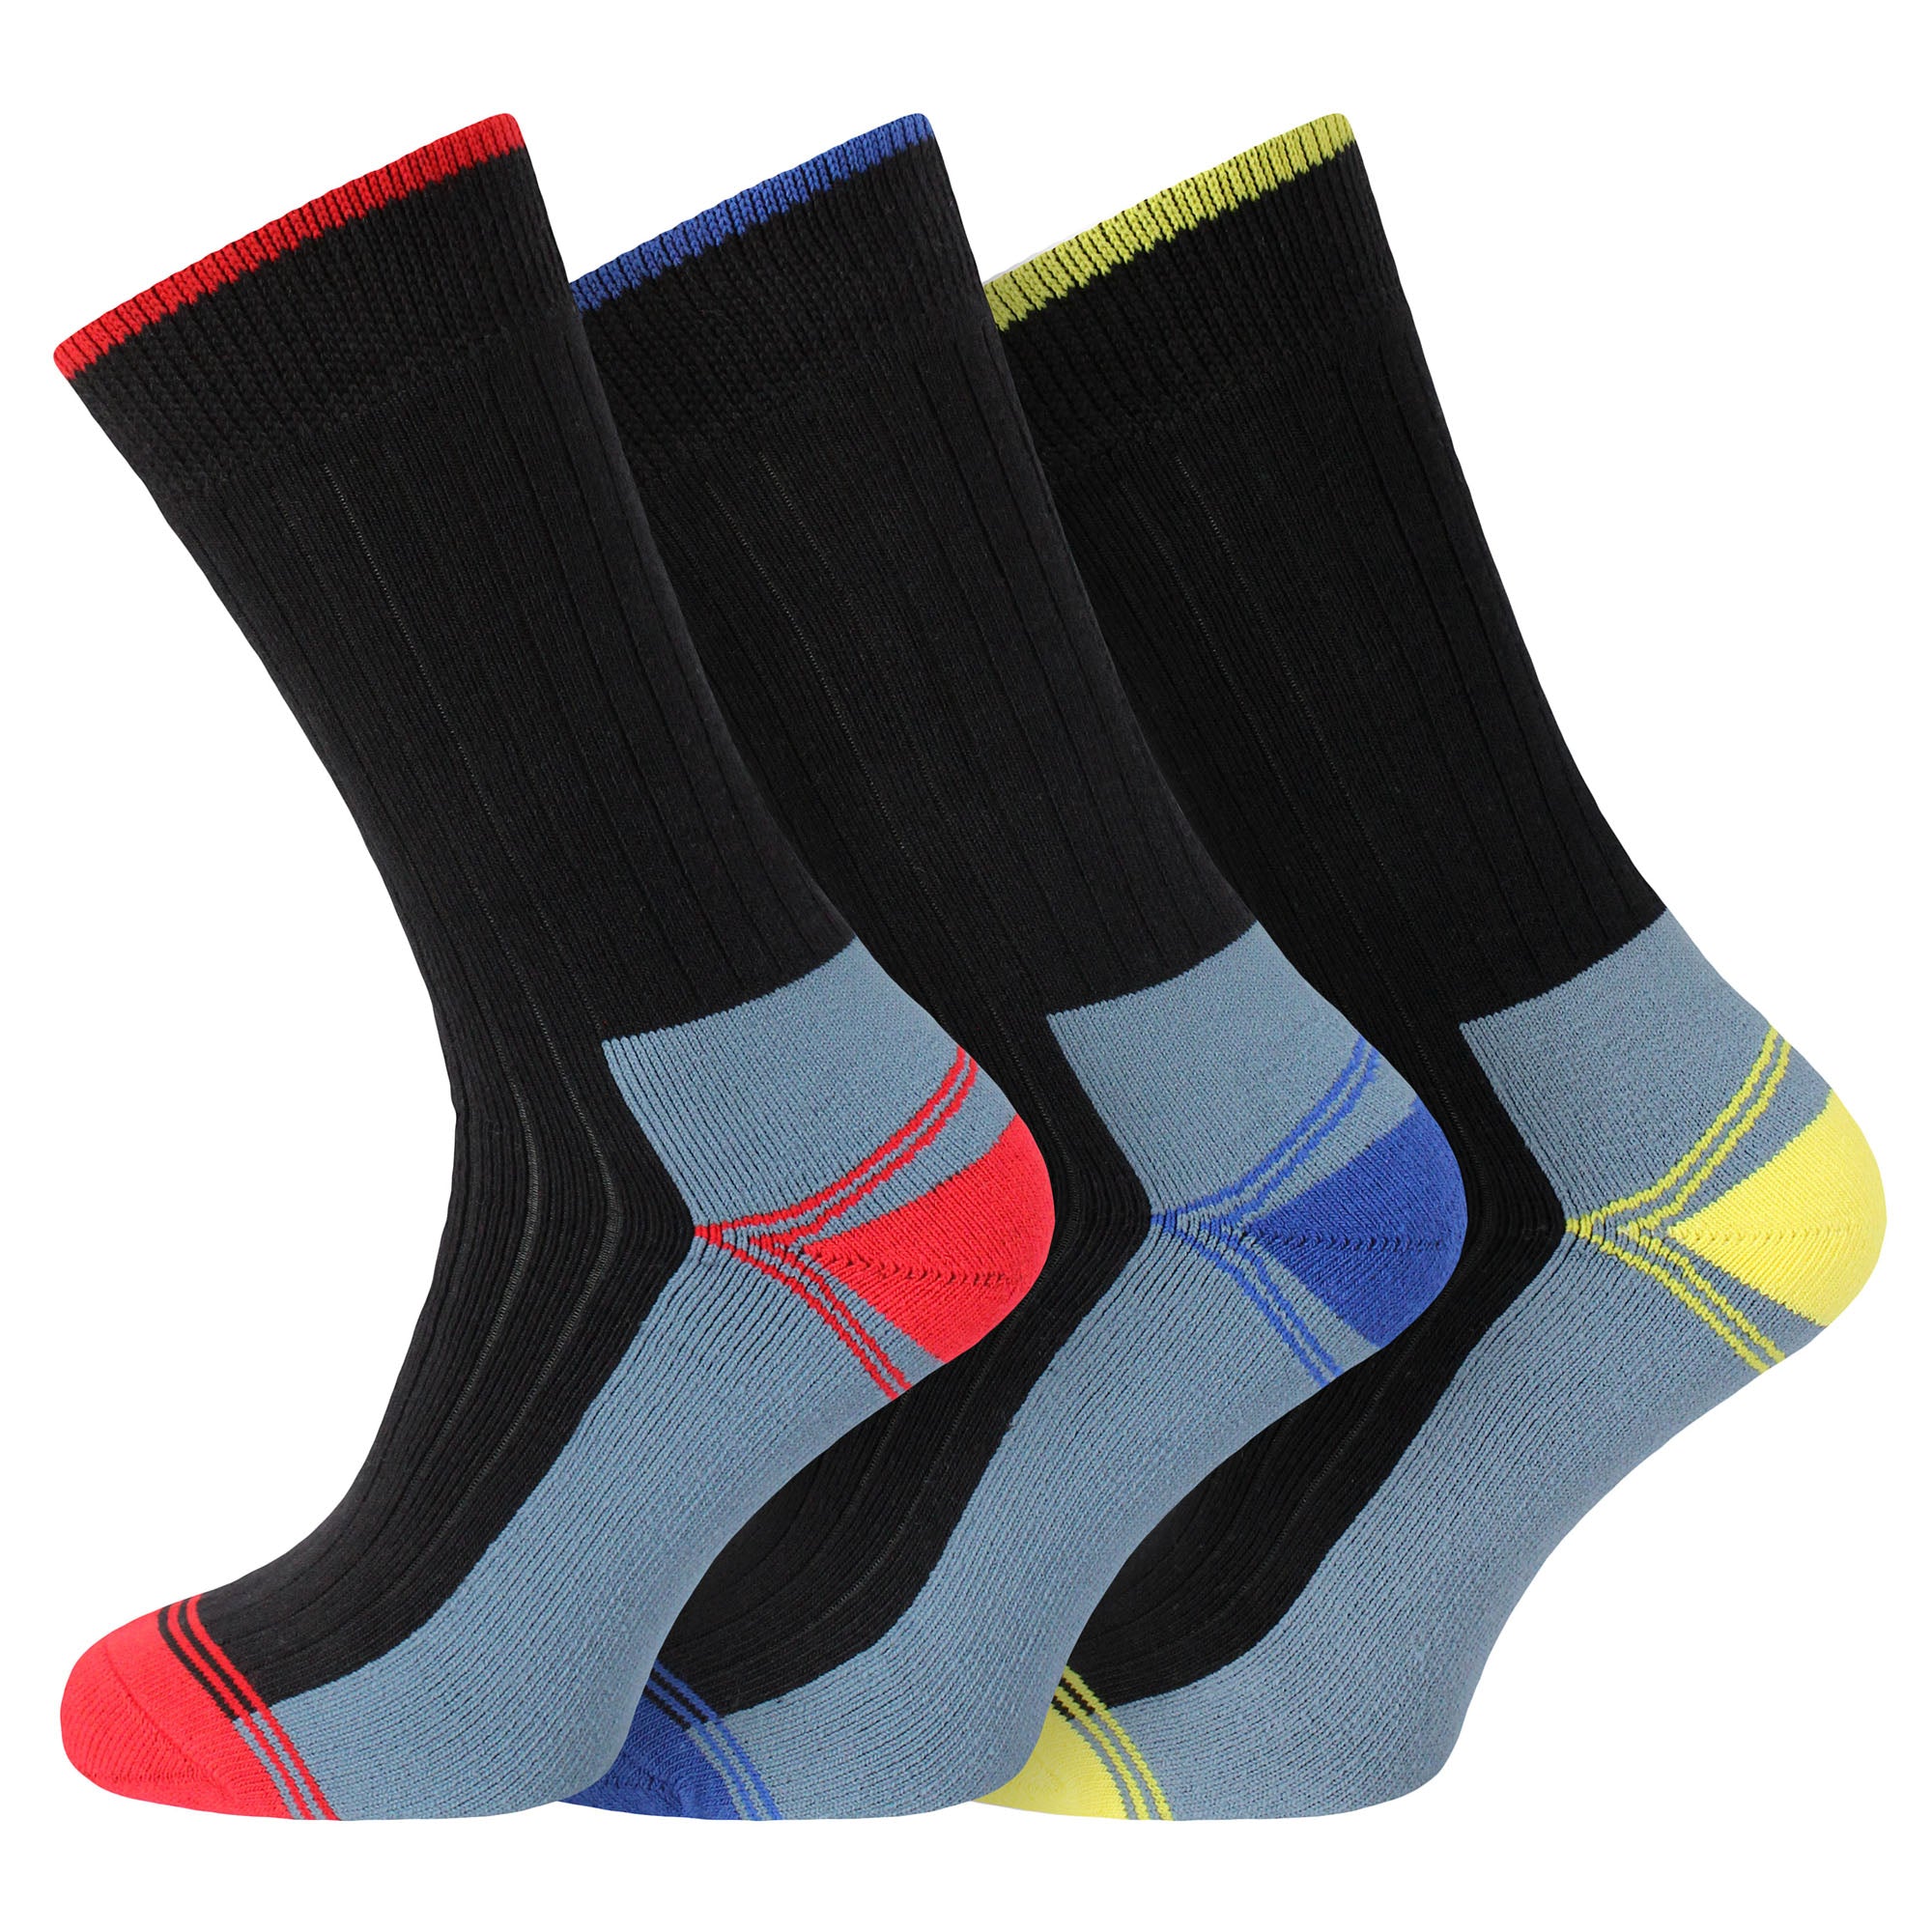 Socksmad ultimate work mens socks reinforced heel/toe 12 prs | SocksMad